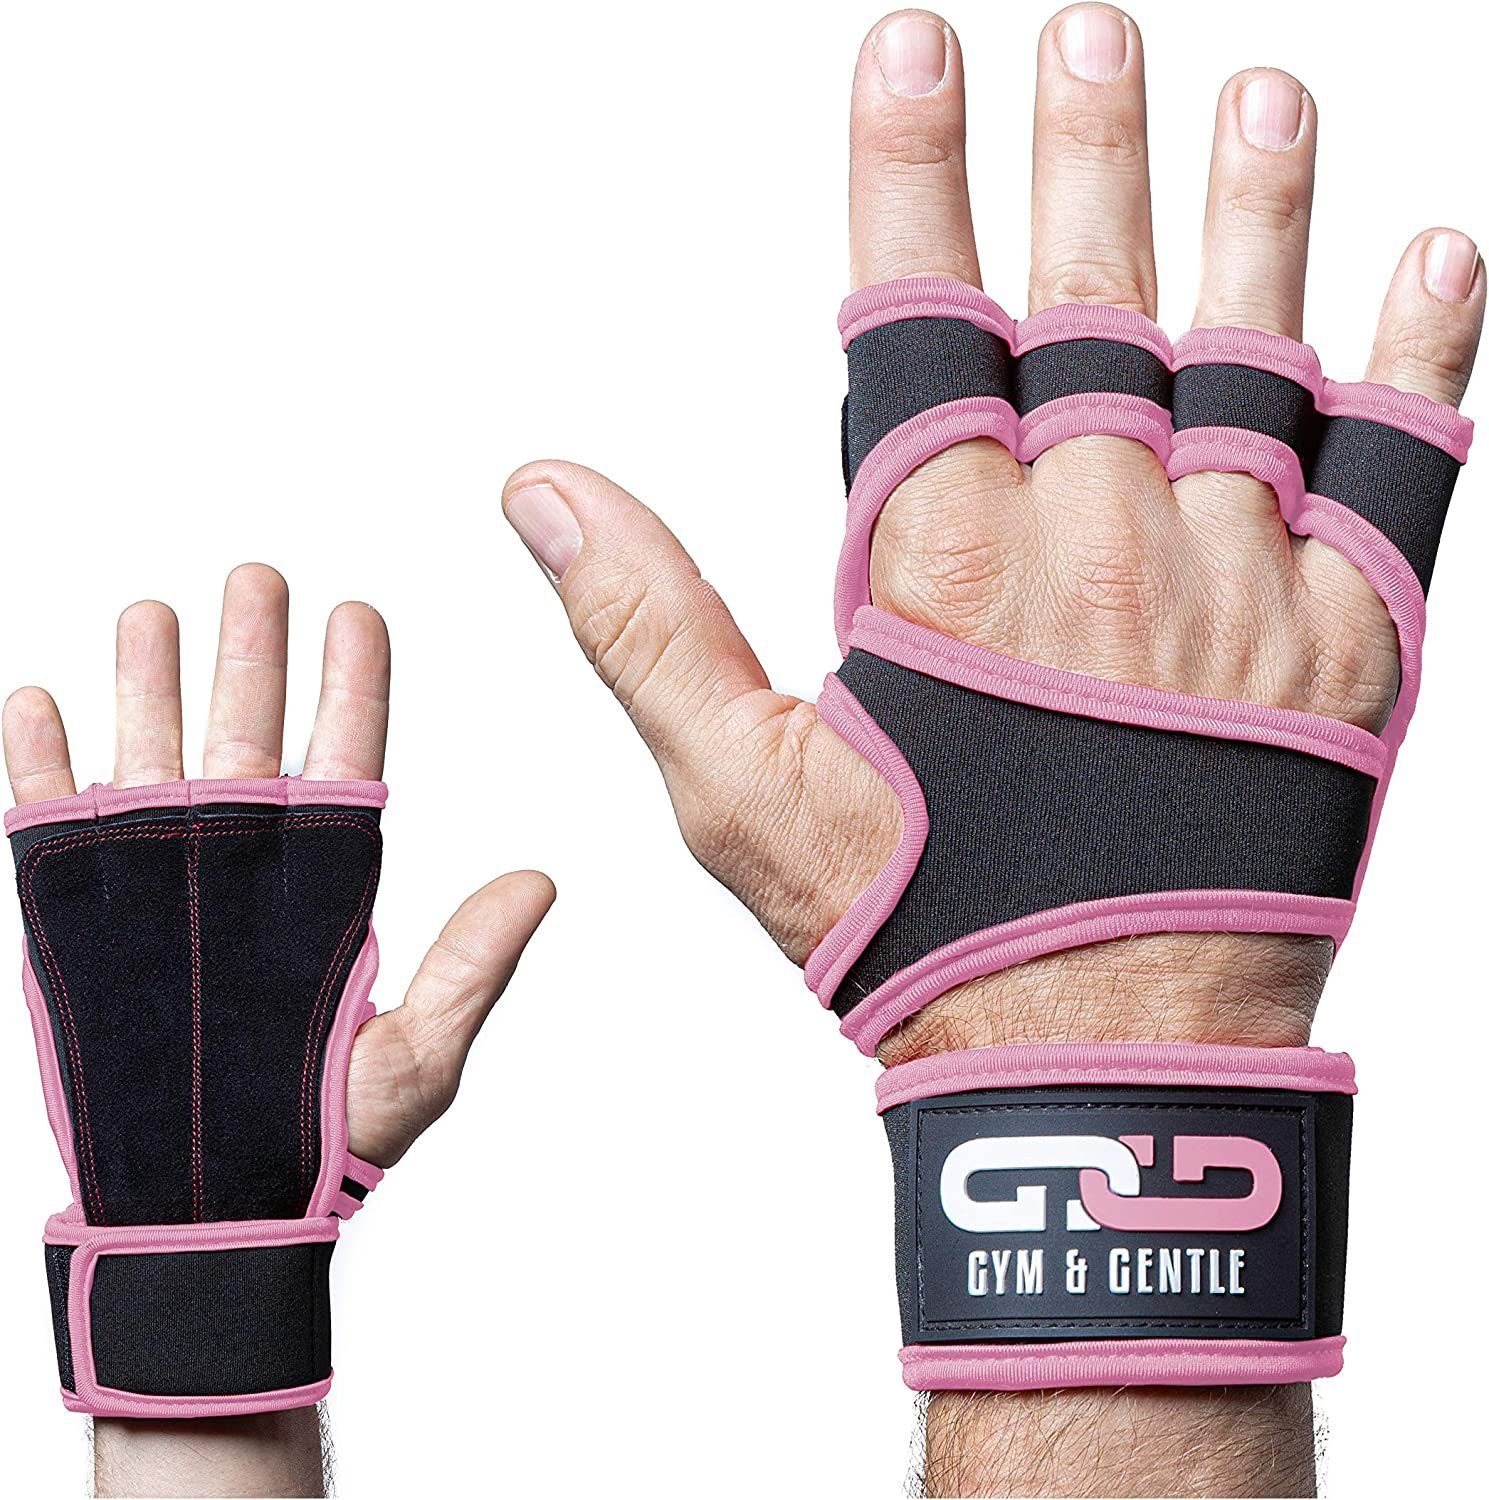 Gym & für geringes Multisporthandschuhe mit Frauen Handgelenkstütze Fitnesshandschuhe Männer rosa Gewicht Gentle und